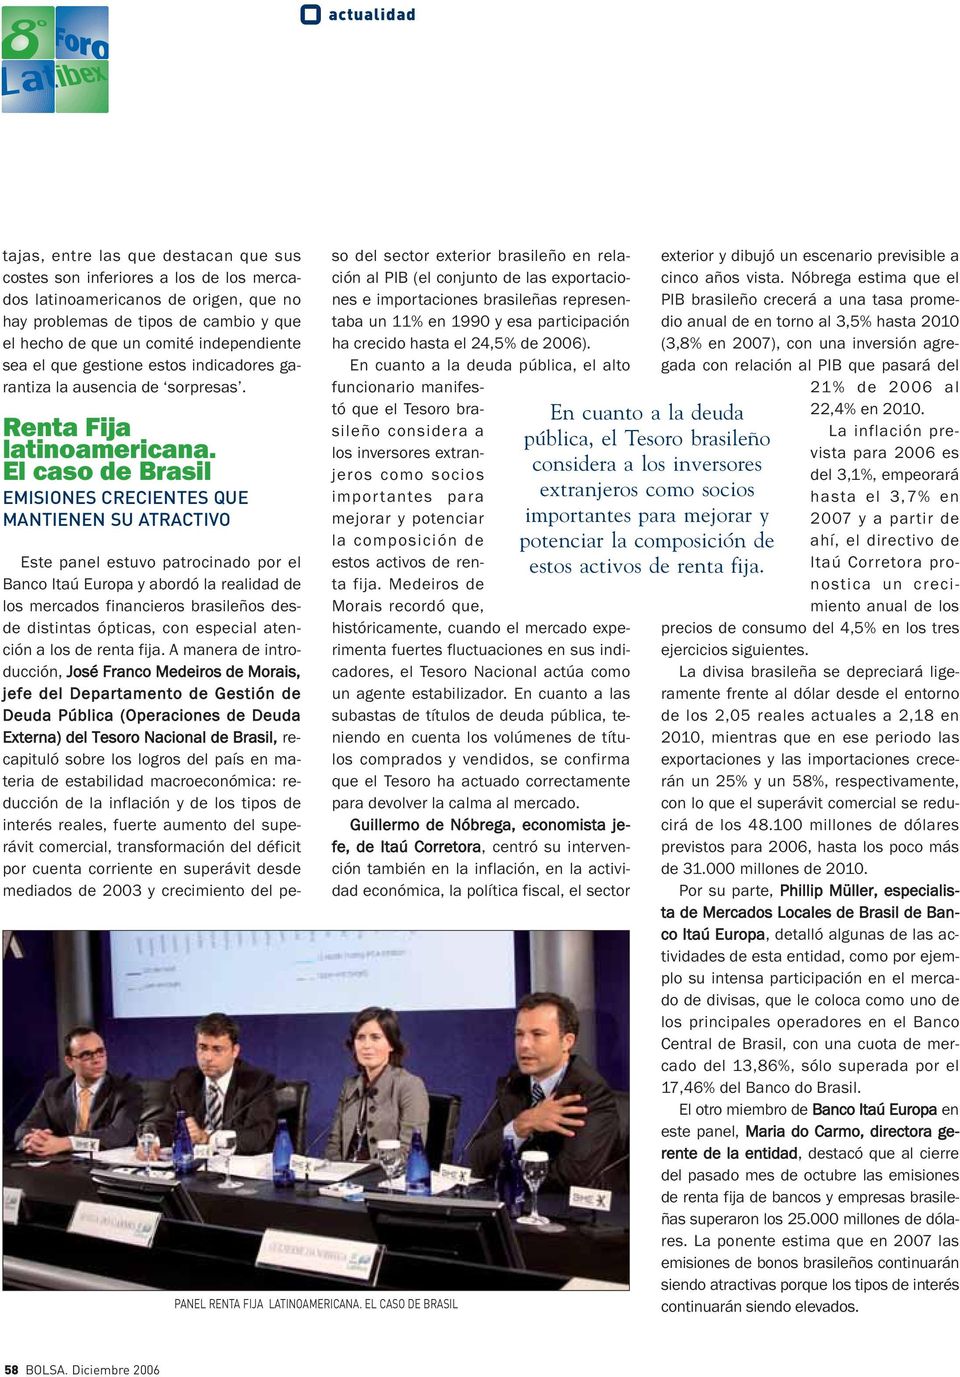 EL CASO DE BRASIL Este panel estuvo patrocinado por el Banco Itaú Europa y abordó la realidad de los mercados financieros brasileños desde distintas ópticas, con especial atención a los de renta fija.